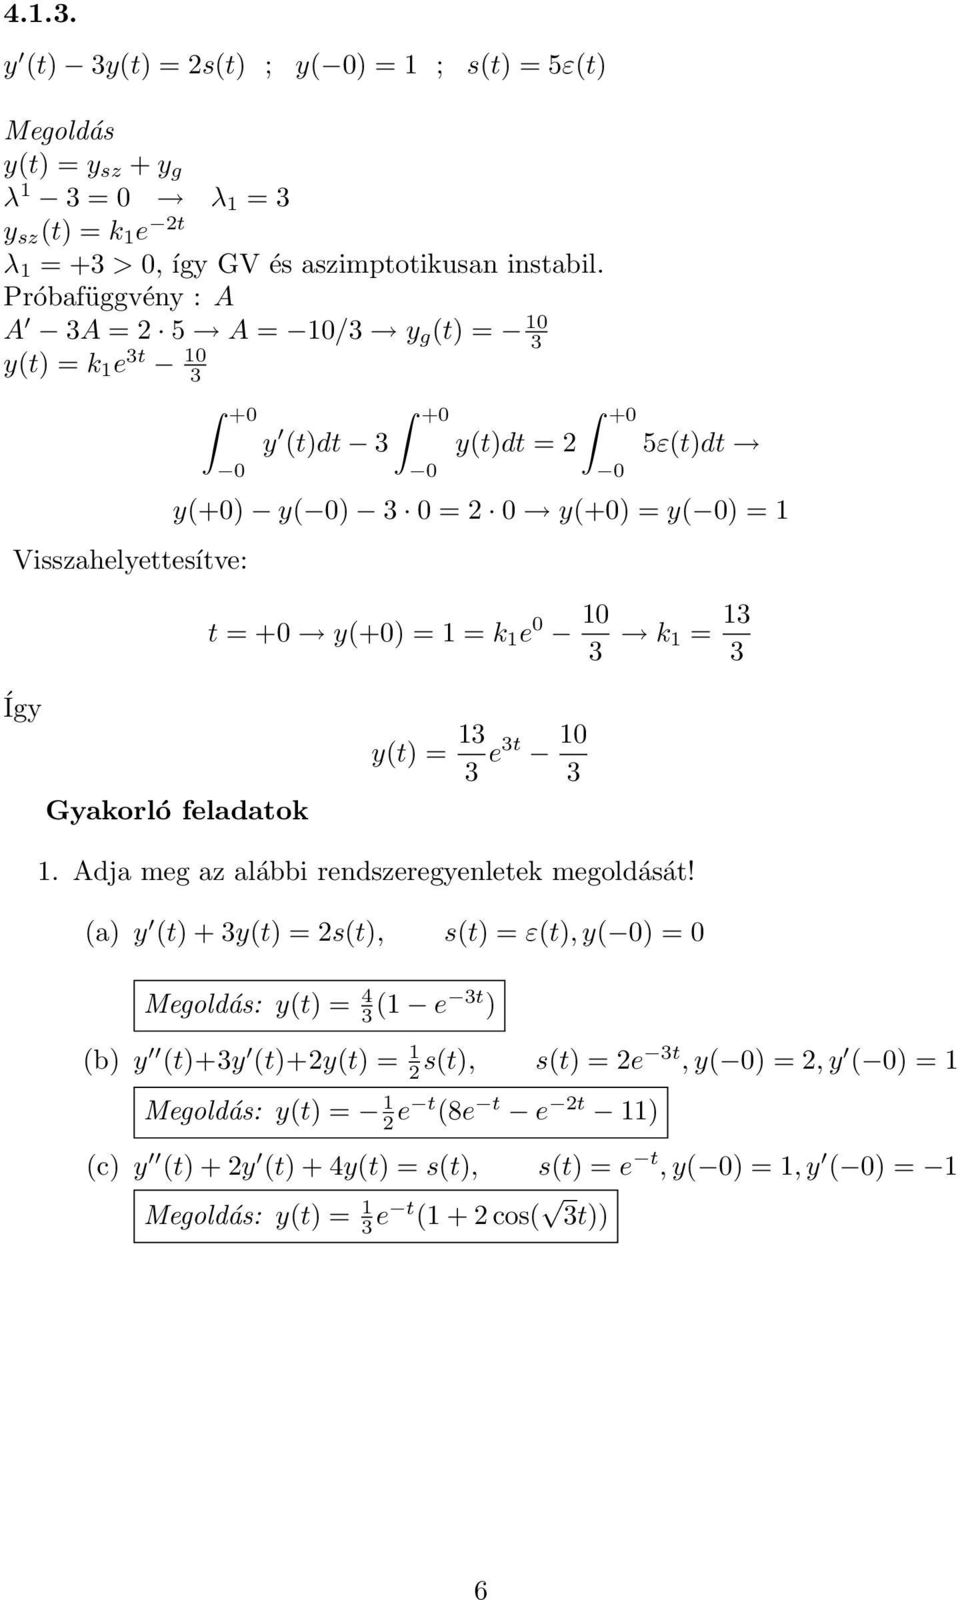 k 1 = 13 3 y(t) = 13 3 e3t 10 3 1. Adja meg az alábbi rendszeregyenletek megoldását!